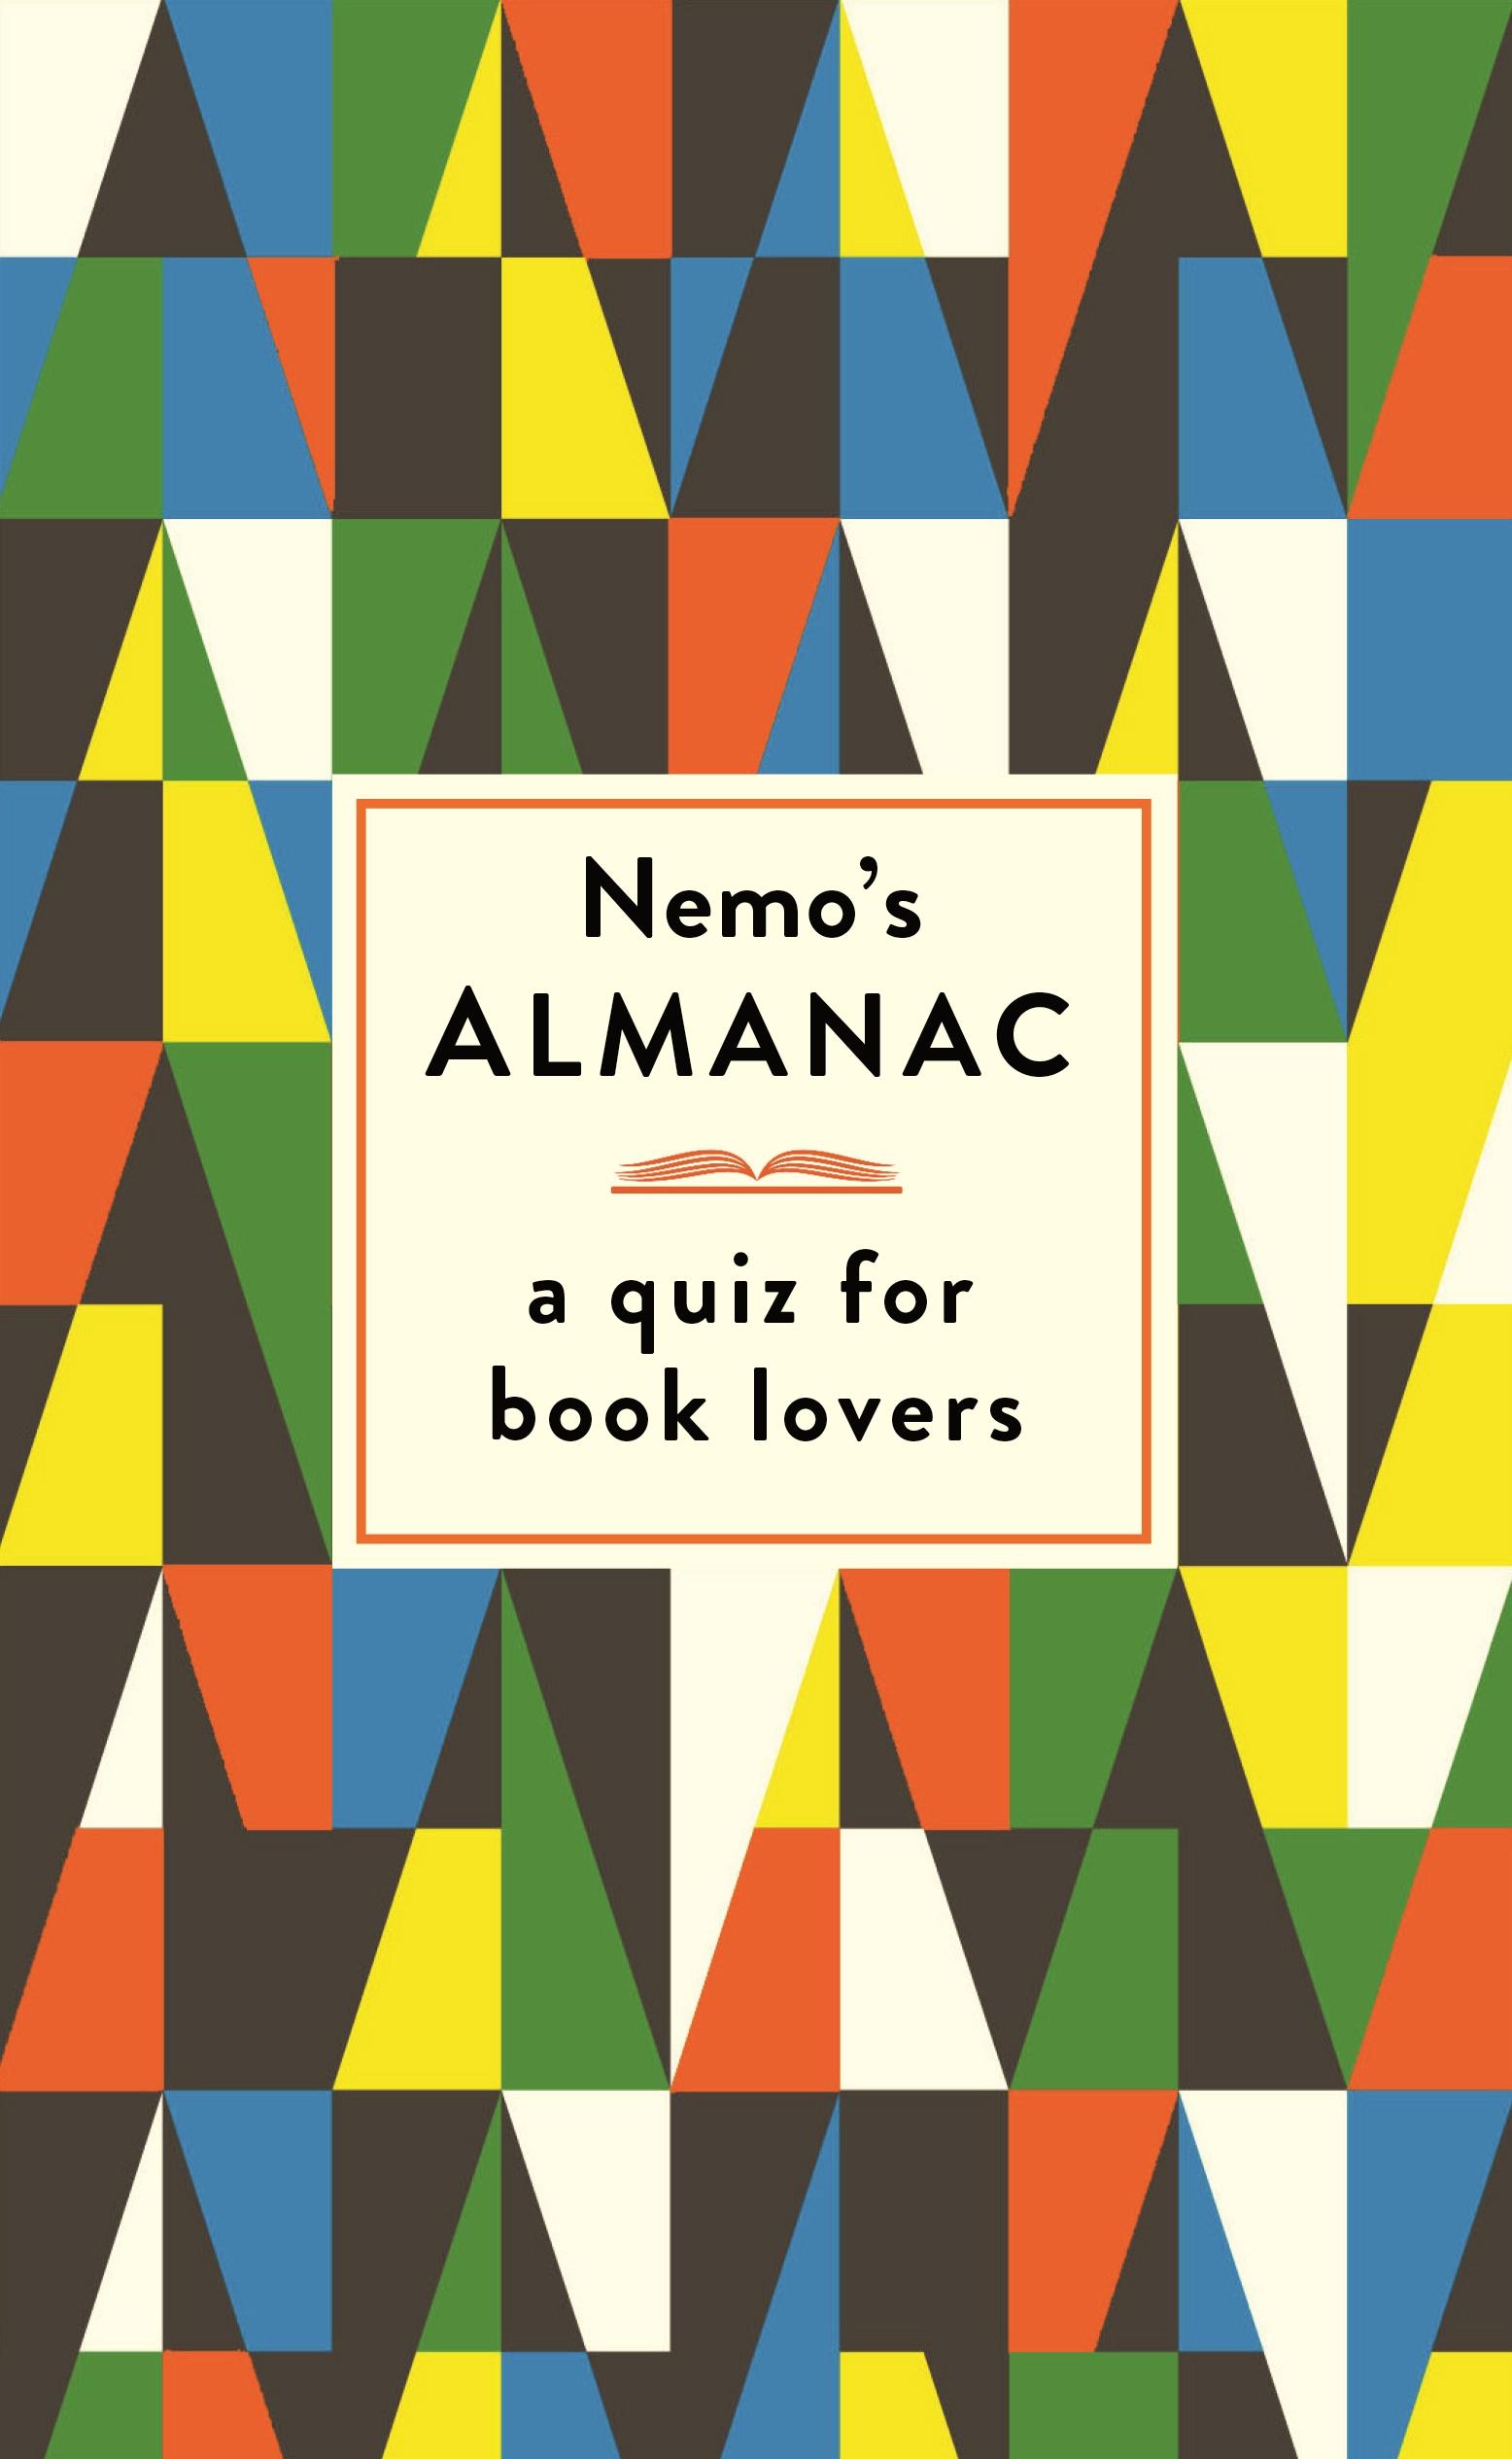 Nemo's Almanac